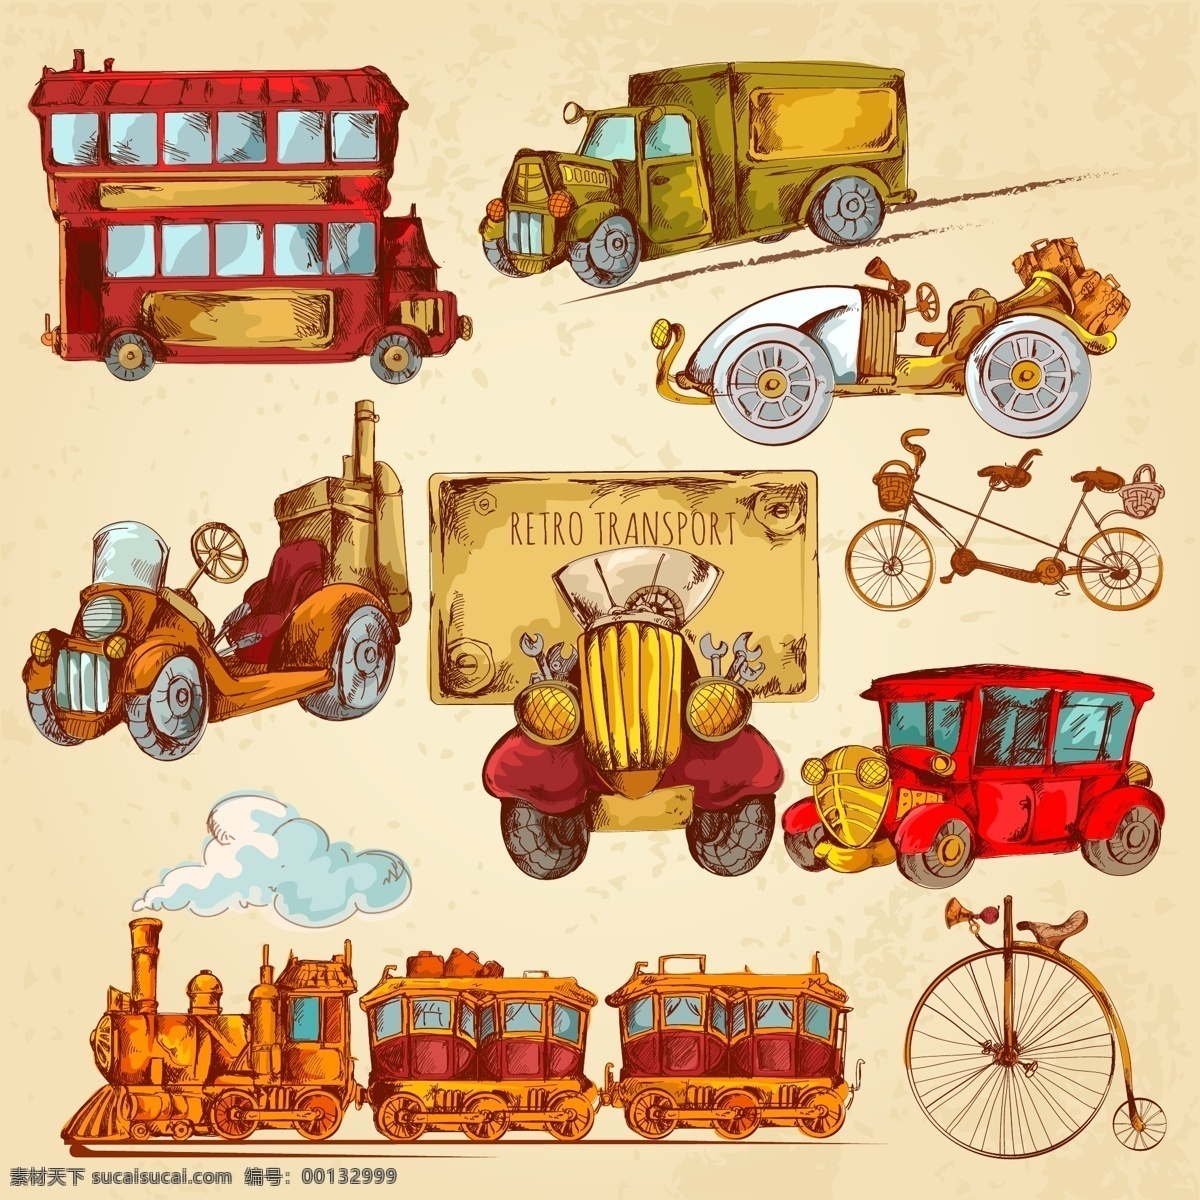 英国 工业革命 交通工具 英国工业革命 手绘交通工具 蒸汽火车 黄色